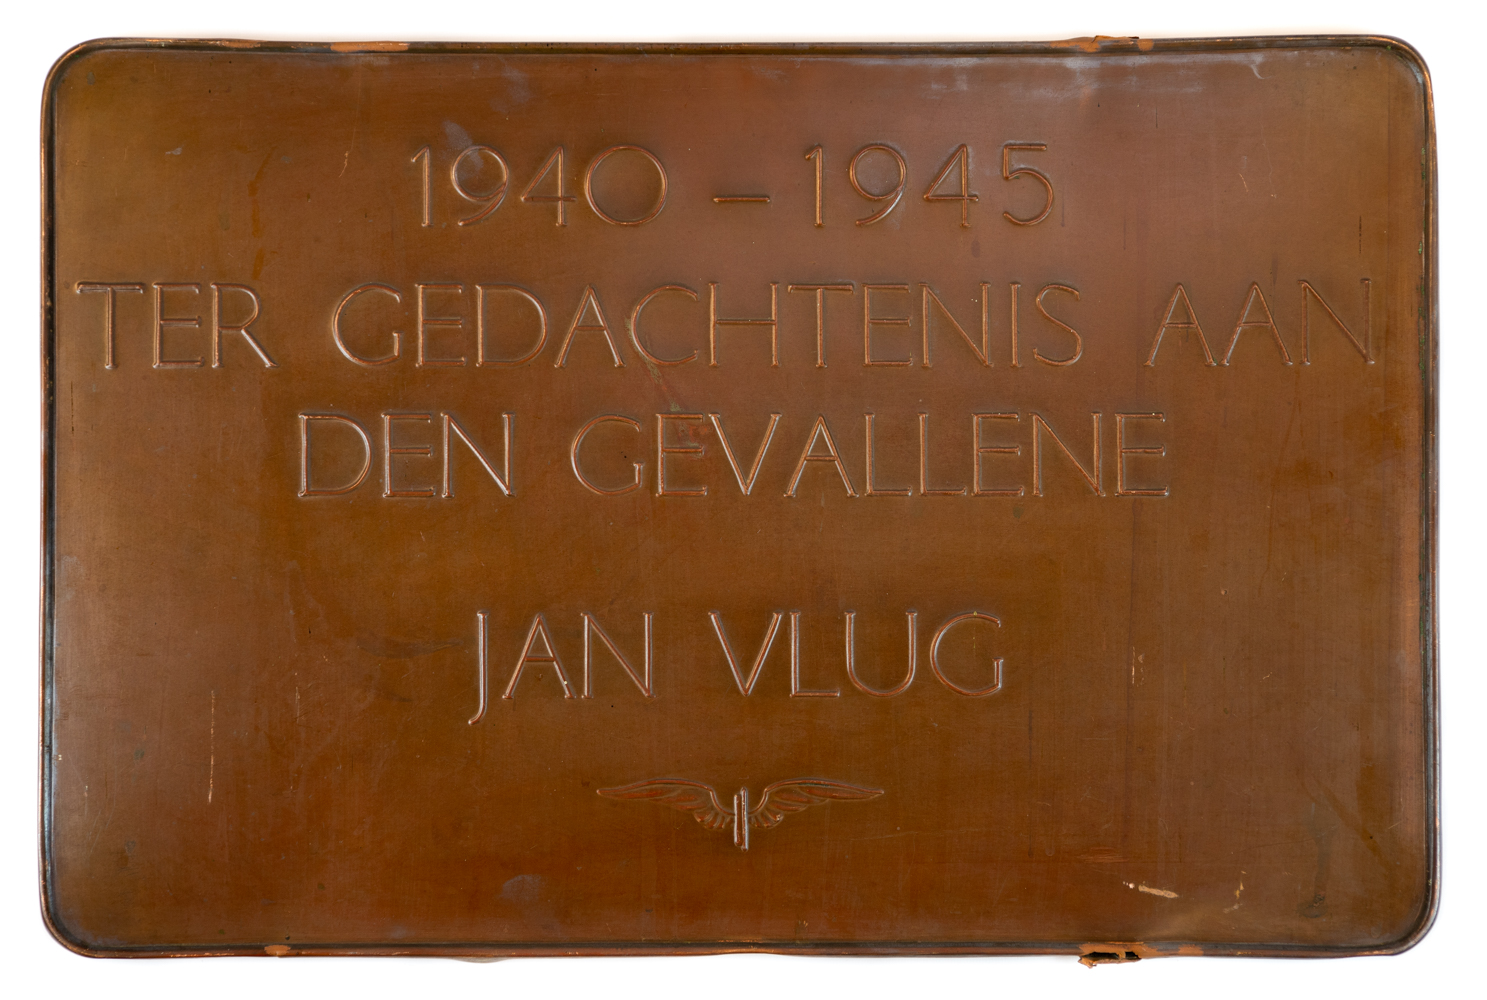 1940-1945 Ter nagedachtenis aan den gevallene Jan Vlug